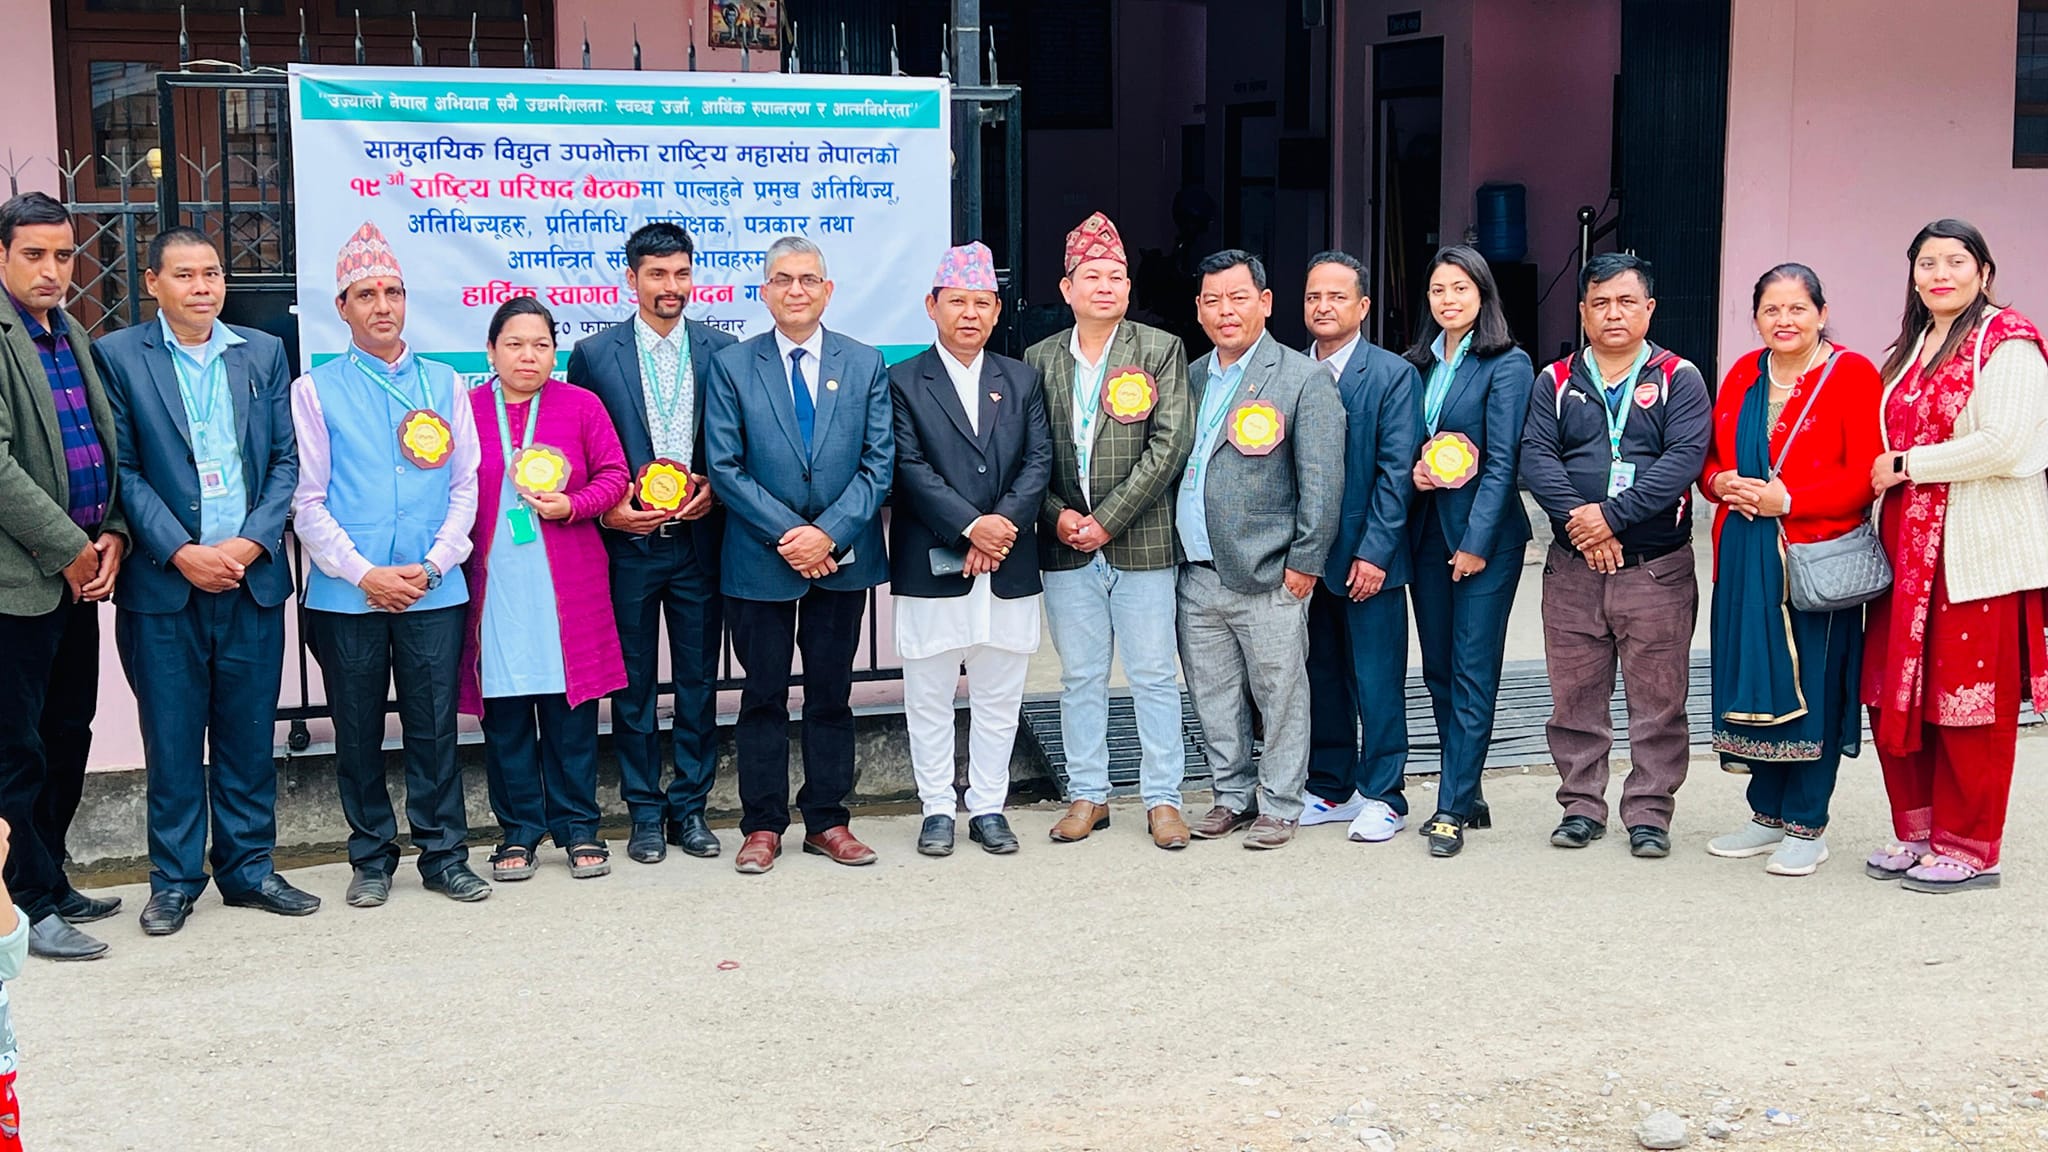 सामुदायिक  बिधुत उपभोक्ता  राष्ट्रिय  महासंघ  नेपाल को १९ औं  राष्ट्रिय परिषद  बैठक  सामुदायिक  बिधुत उपभोक्ता  राष्ट्रिय महासंघ  नेपाल  लुम्बिनी  प्रदेशको कार्यालय  तथा  प्रगतिनगर सामुदायिक  बिधुत सहकारी  संस्था  लि को प्रधान  कार्यालय  बुटवल  उप महानगर  पालिका  वडा  न ११ प्रगतिनगरमा  सम्पन्न भयो ।  कार्यक्रममा  सामुदायिक  बिधुत उपभोक्ता  राष्ट्रिय  महासंघ  आवद्ध  करिब  ३०० संस्था को सहभागीतामा १२ बुदे  बुटवल  घोषणा पत्र  जारी  गरेको  छ । कार्यक्रममा लुम्बिनी  प्रदेश भौतिक  तथा  पुर्भाधार बिकास  मन्त्री  माननीय  धर्म बहादुर  चौधरी को प्रमुख  आतिथ्यता तथा नेपाल  बिधुत प्राधिकरणका उप निर्देशक  मनोज  सिलवाल विशेष आतिथ्य ता  रहेको थियो  । साथै देशभरका सामुदायिक बिधुत संस्था हरु मध्य बाट प्रगतिनगर सामुदायिक बिधुत सहकारी संस्था उत्कृष्ट भइ सम्मानित भएको छ।